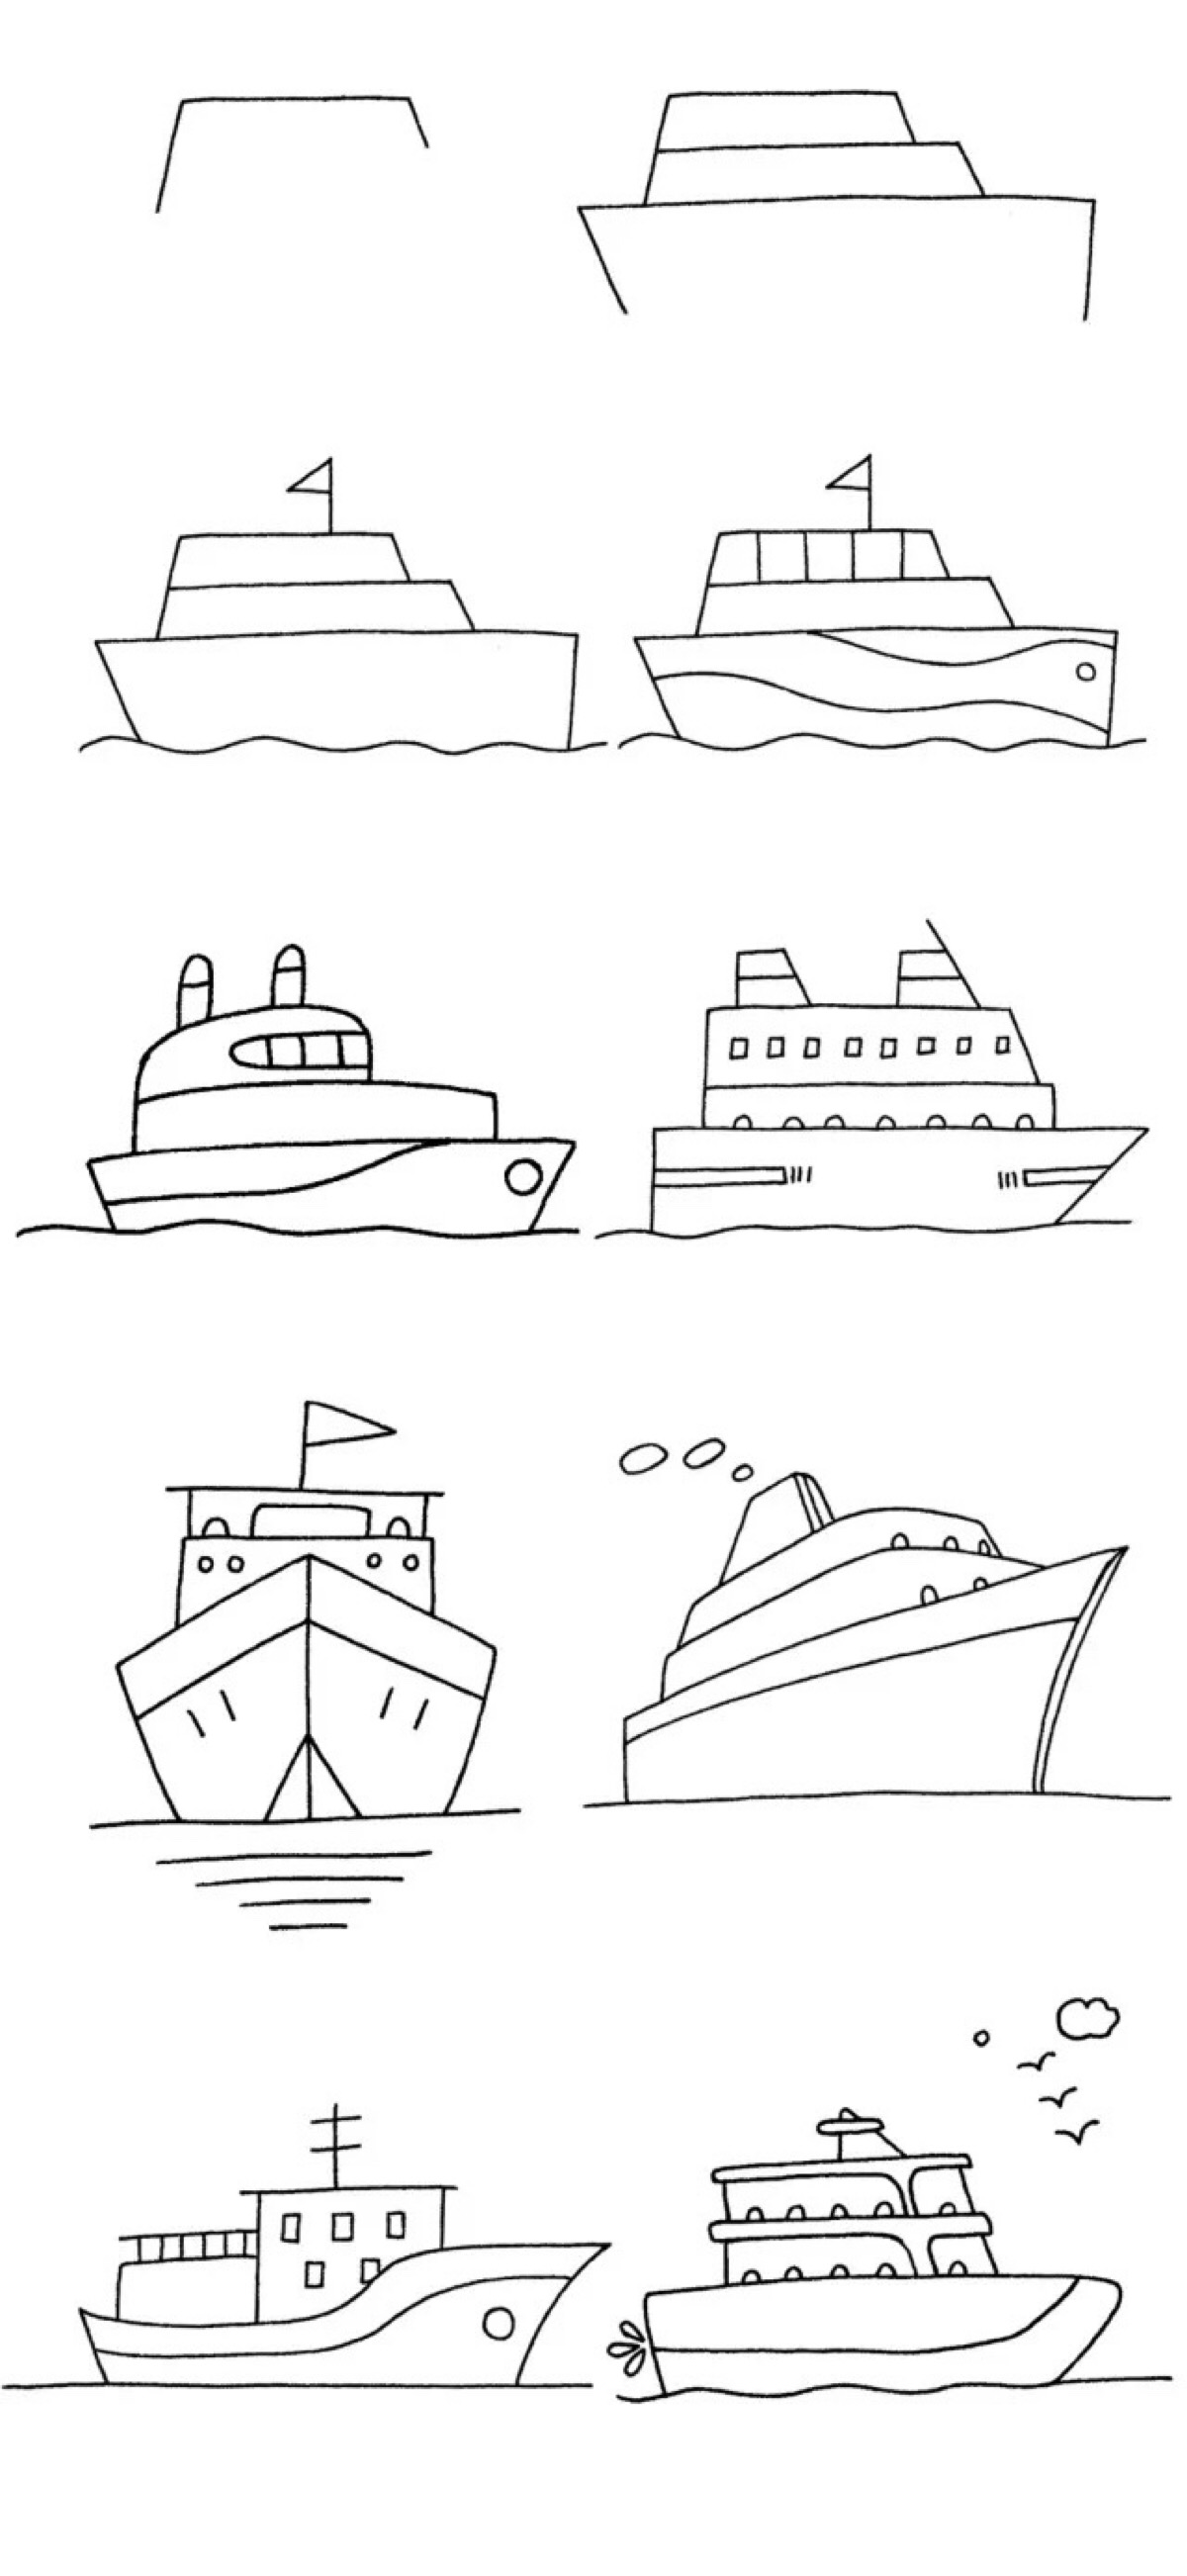 船的画法图片大全简单图片